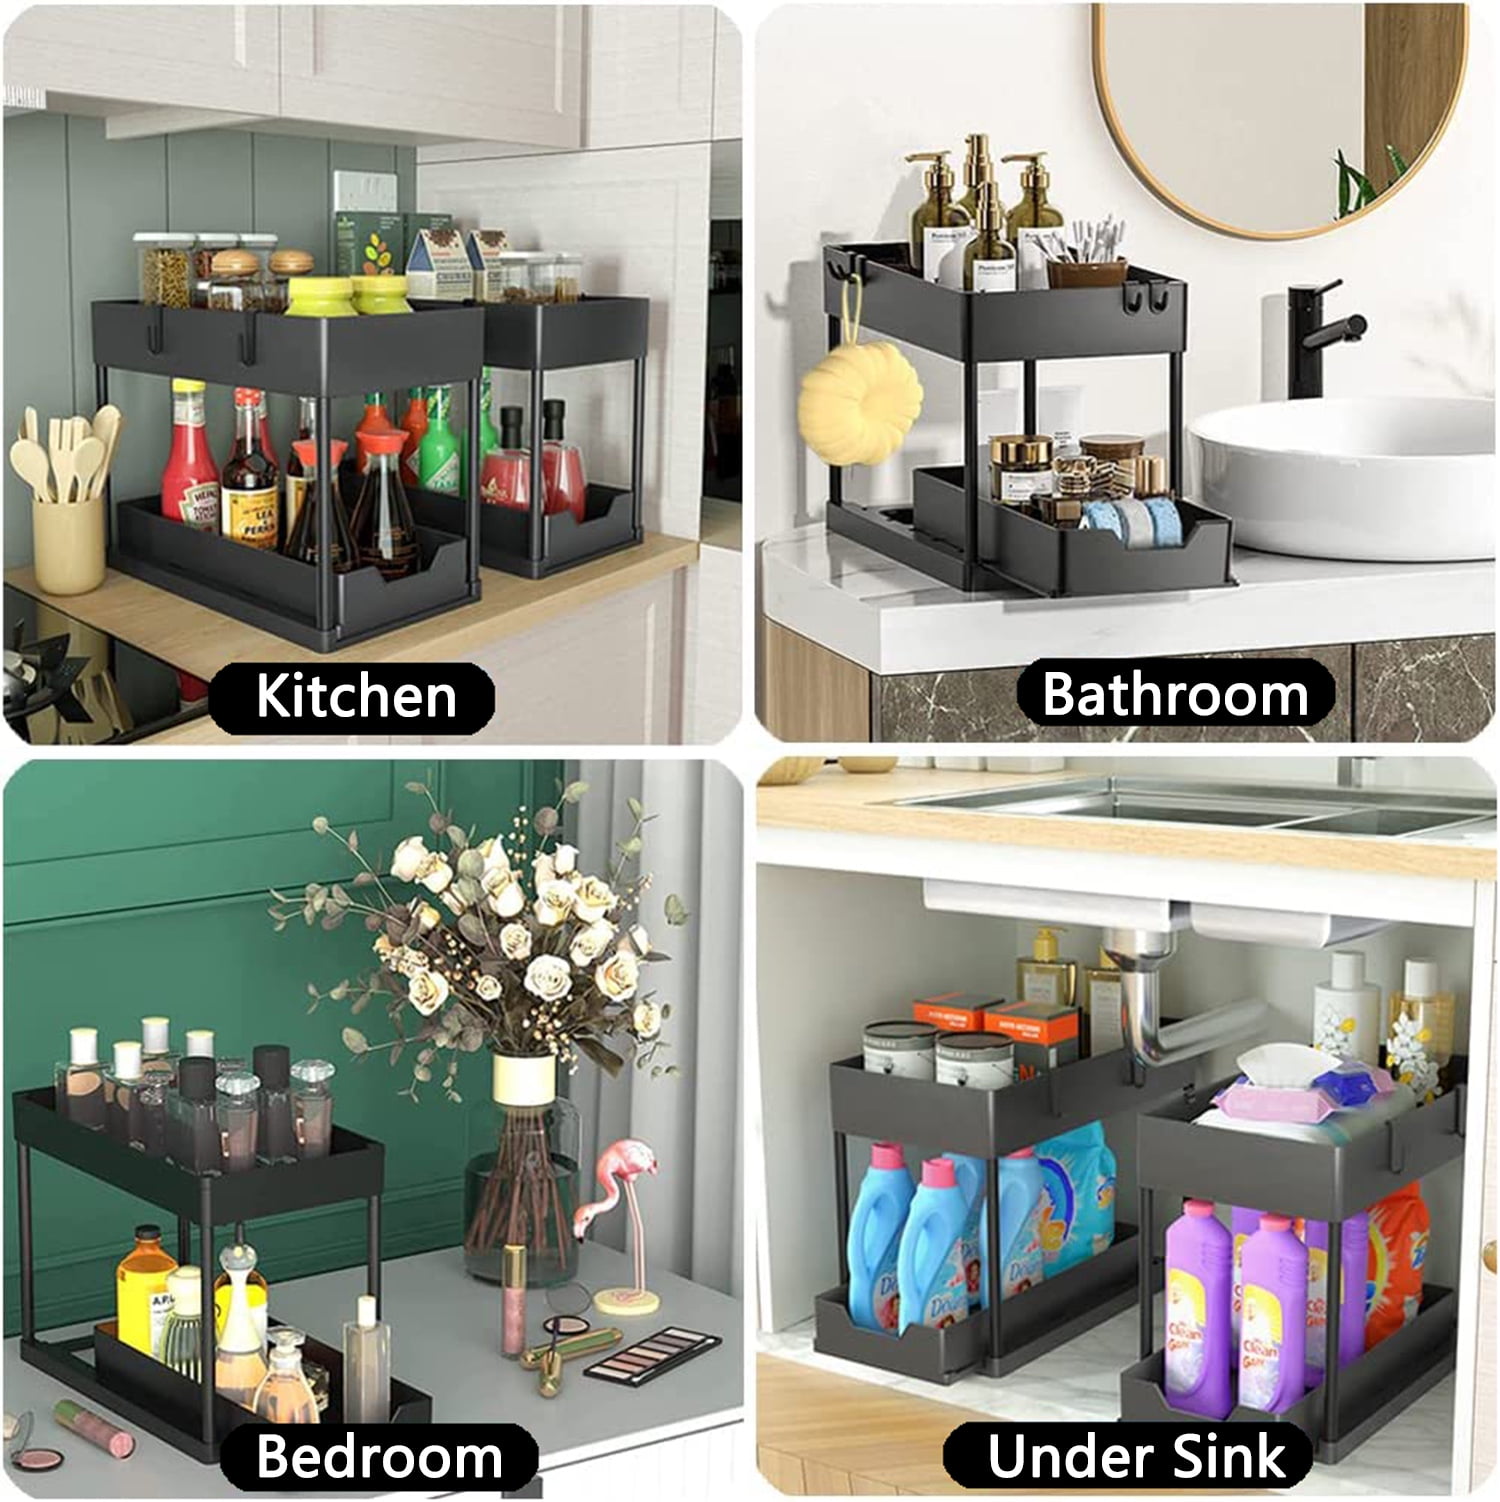 Kitchen Sink Organizer: Maximize Space with the REALINN Under Sink Organizer